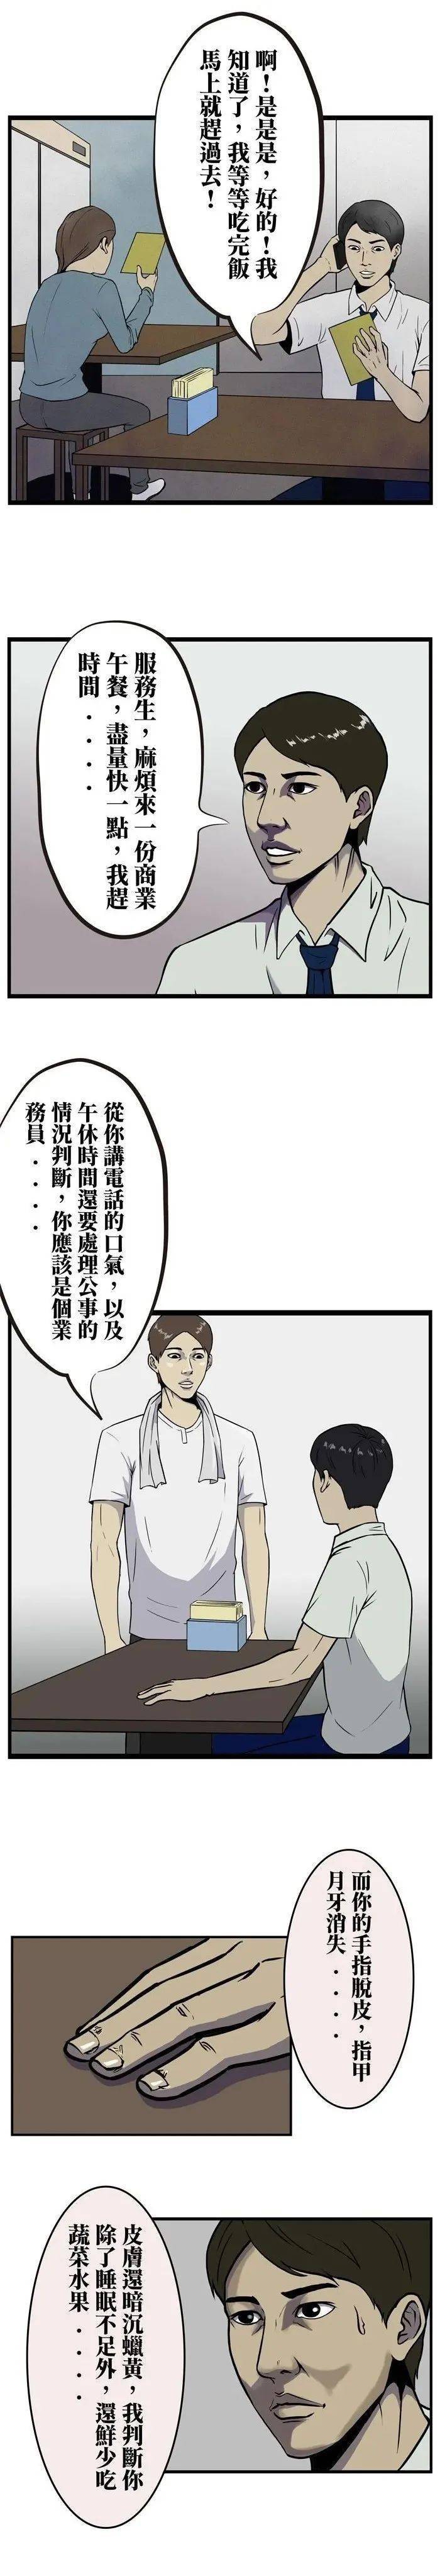 【短篇漫画】善解人意的大厨_话说